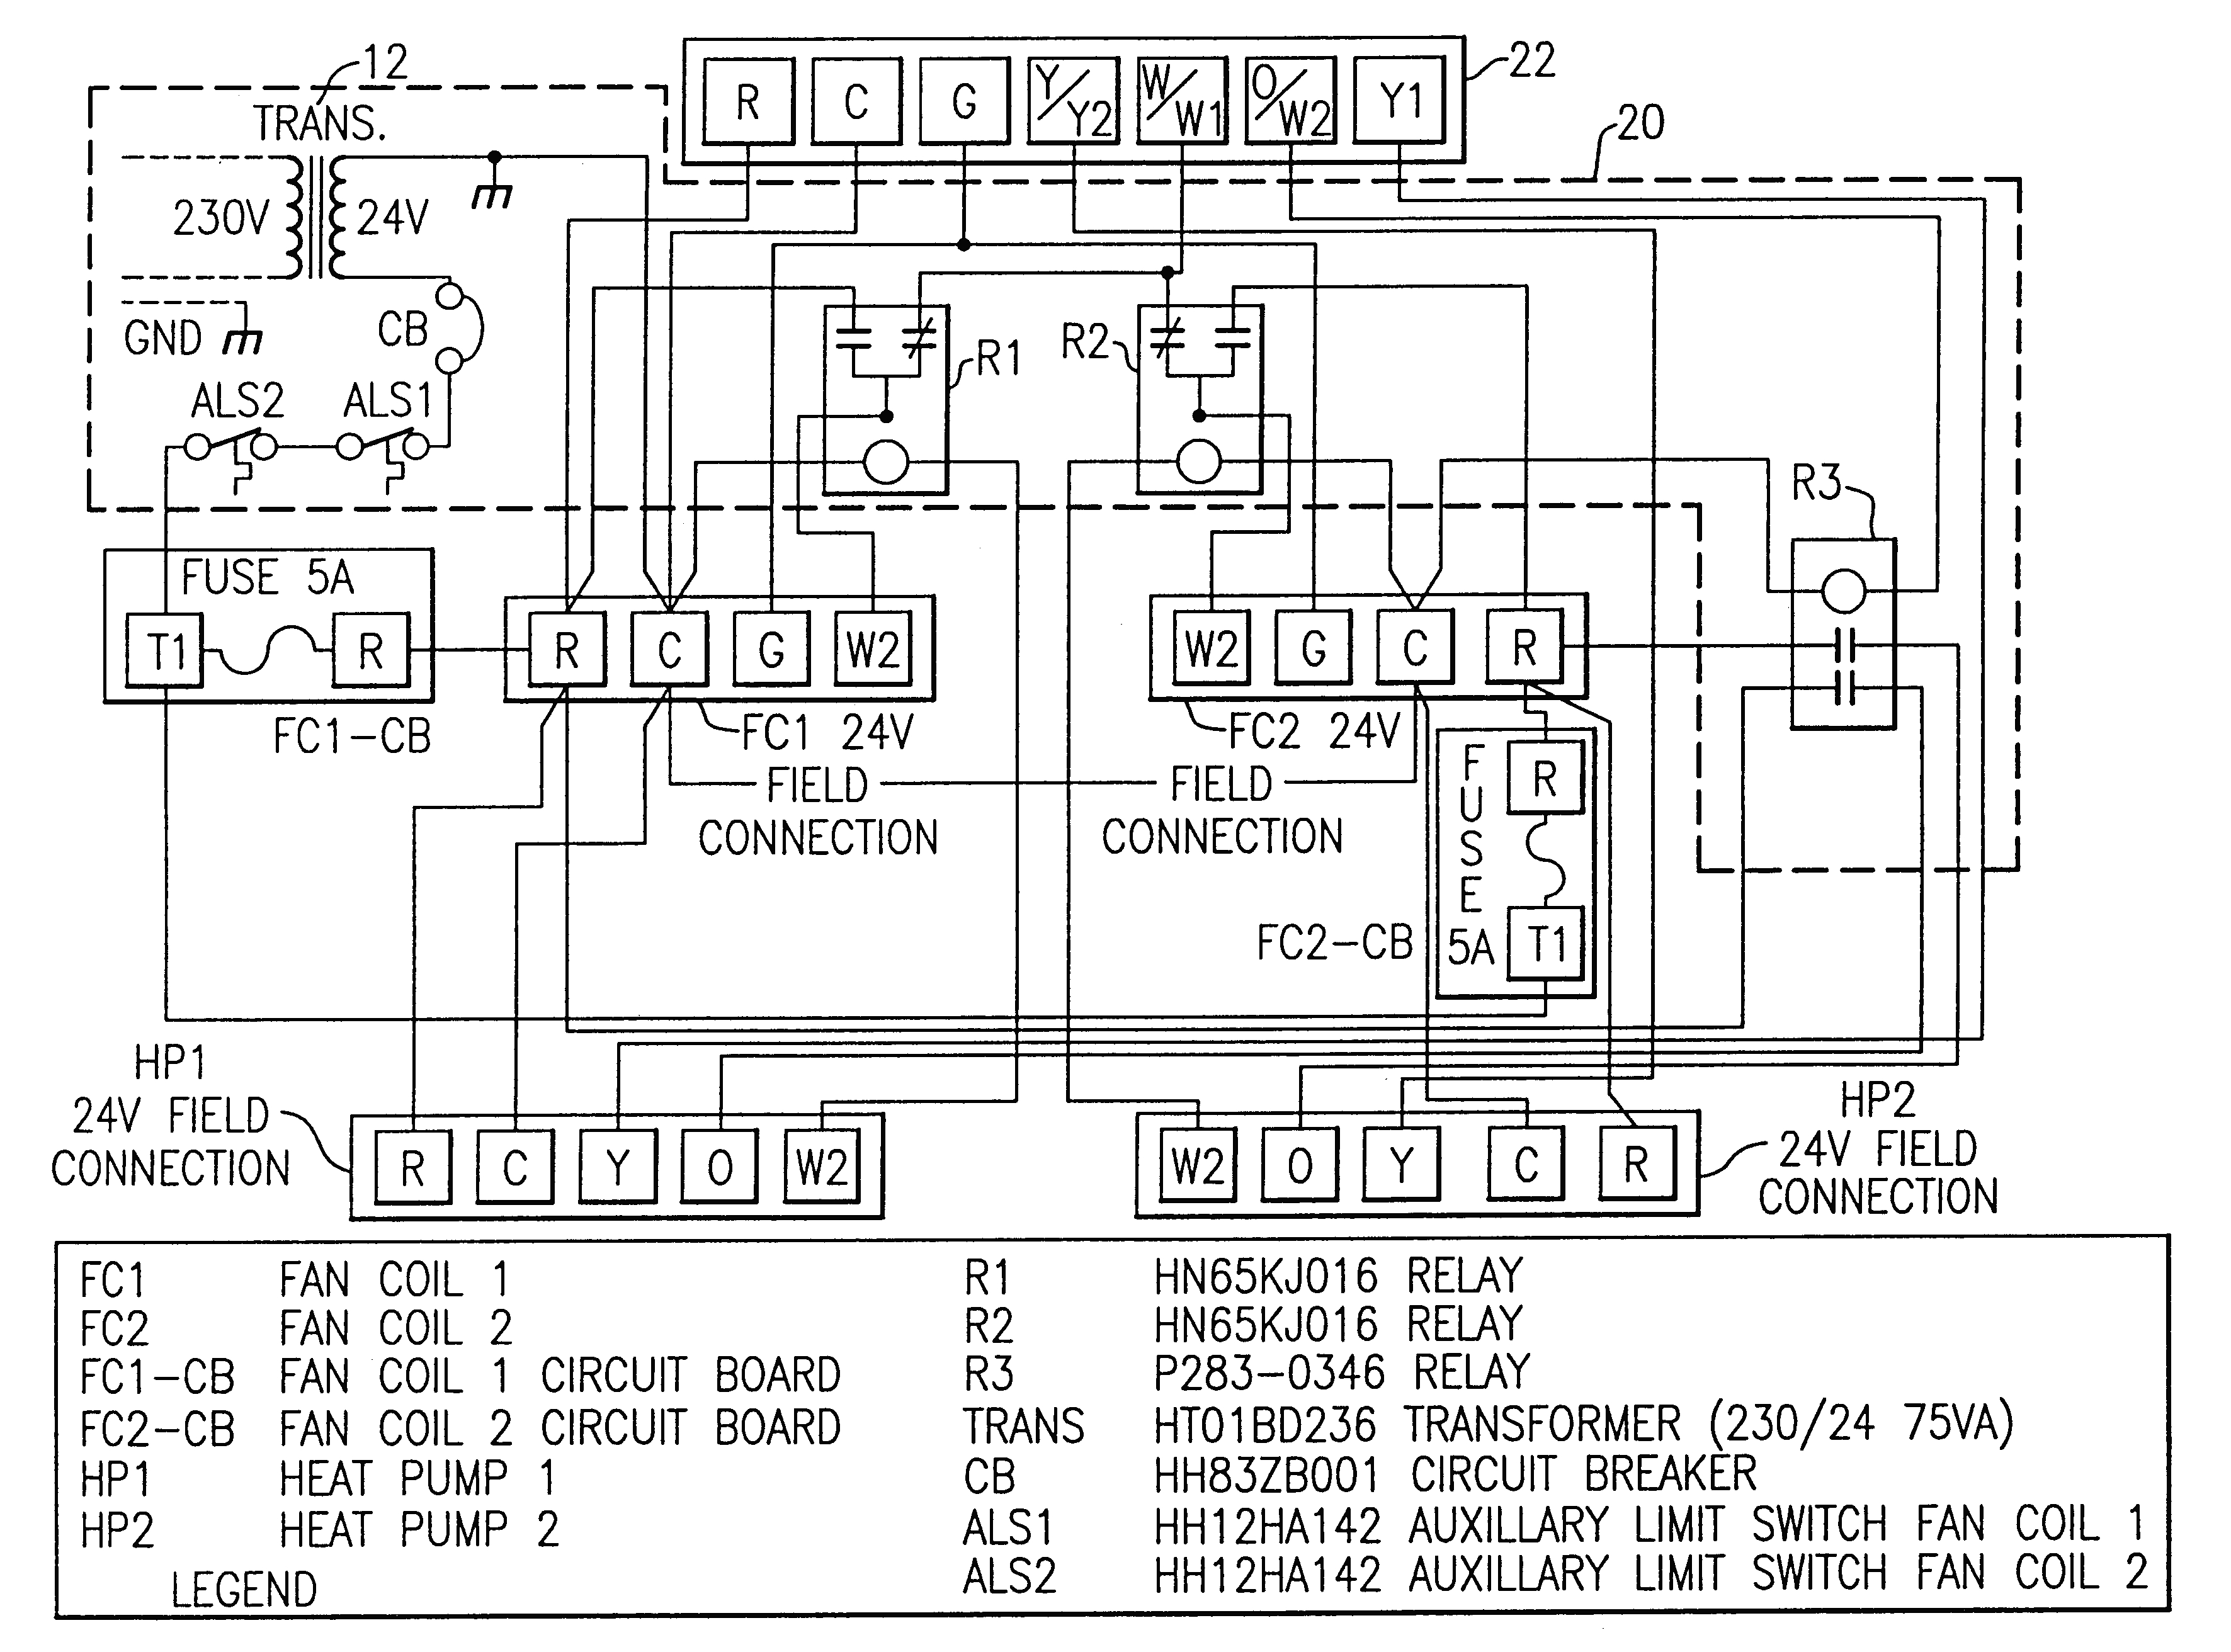 Rheem Classic Air Conditioner Wiring Diagram | Wiring Diagram - Rheem Heat Pump Wiring Diagram